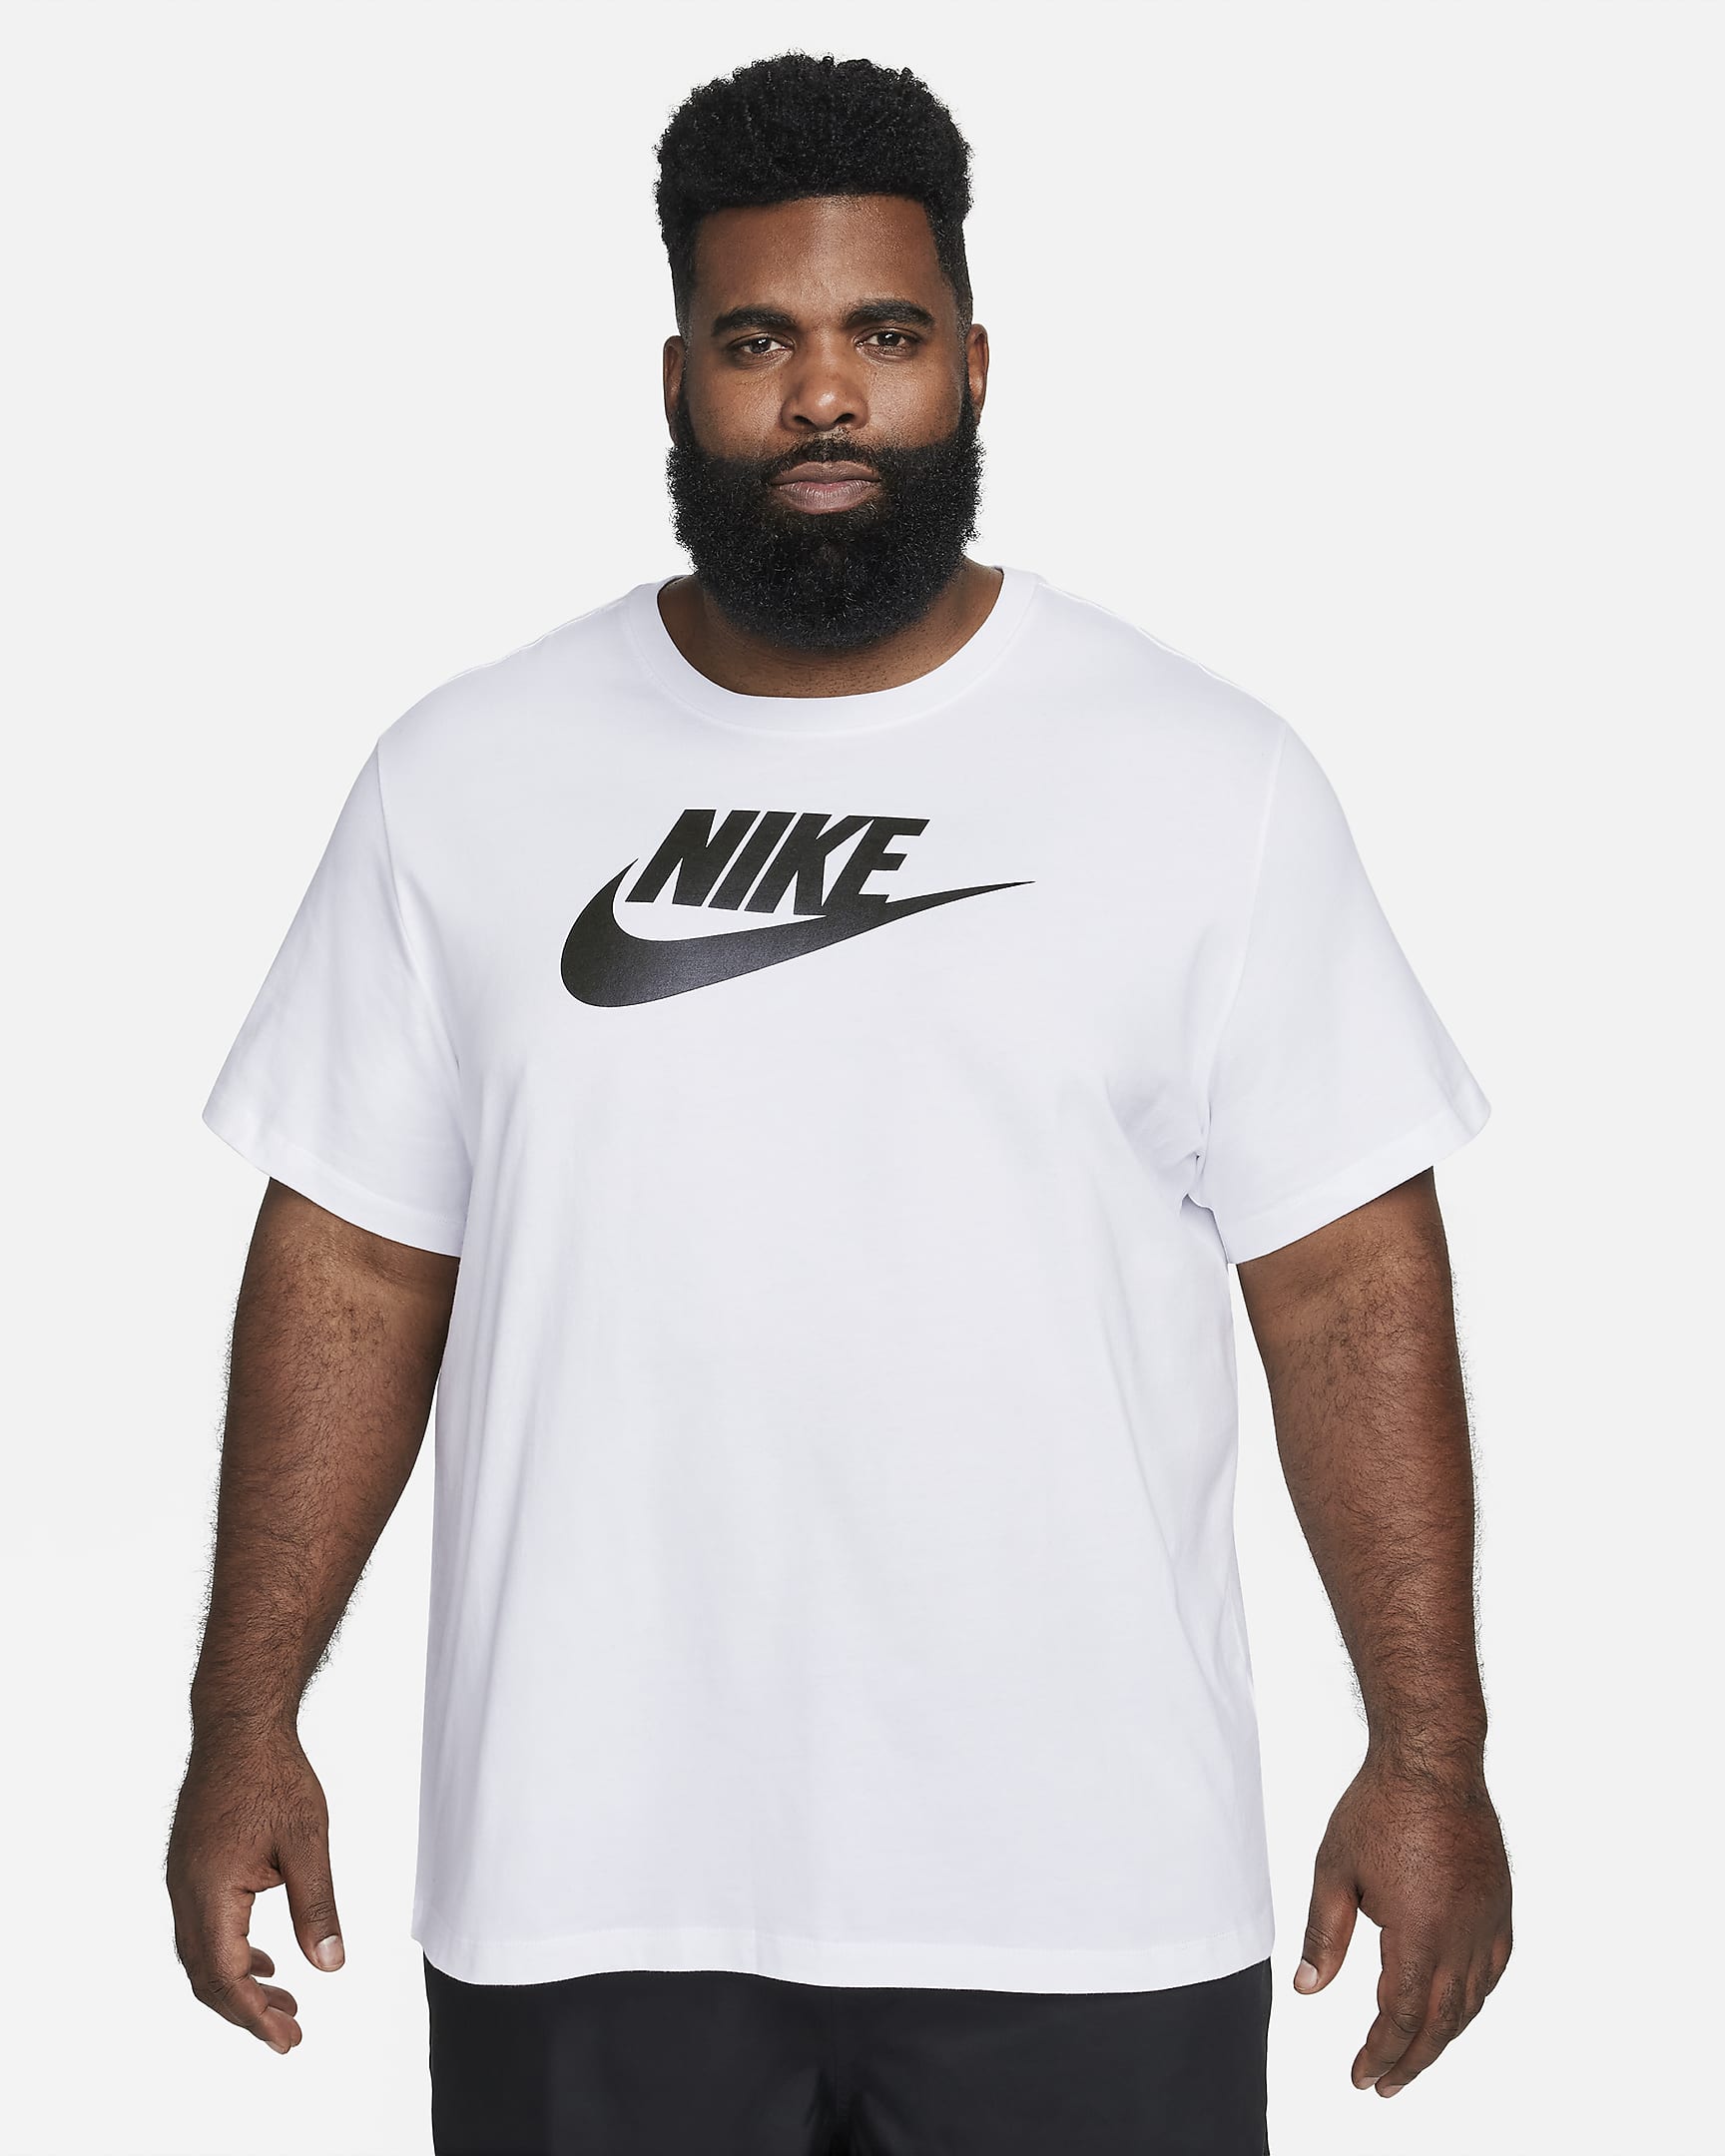 Nike Sportswear Herren-T-Shirt - Weiß/Schwarz